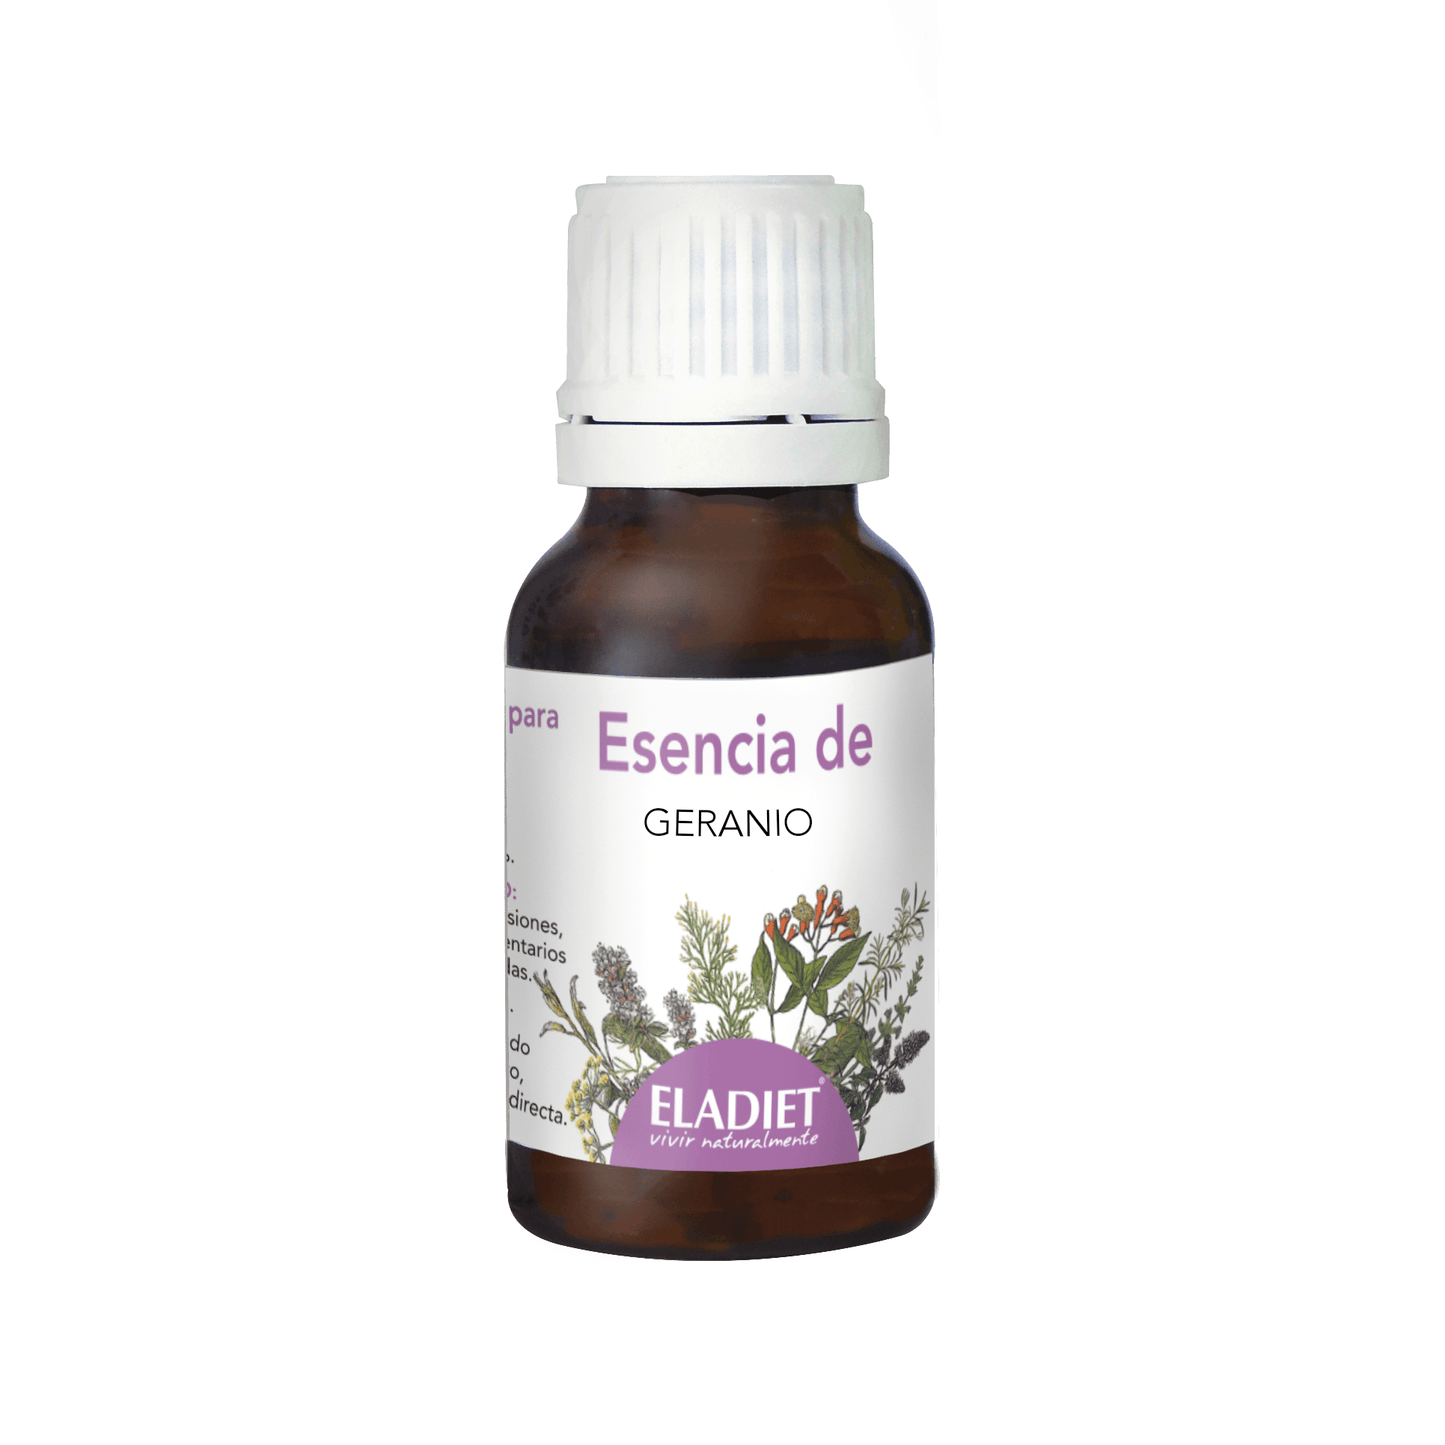 Esencia de Geranio 15 ml | Eladiet - Dietetica Ferrer